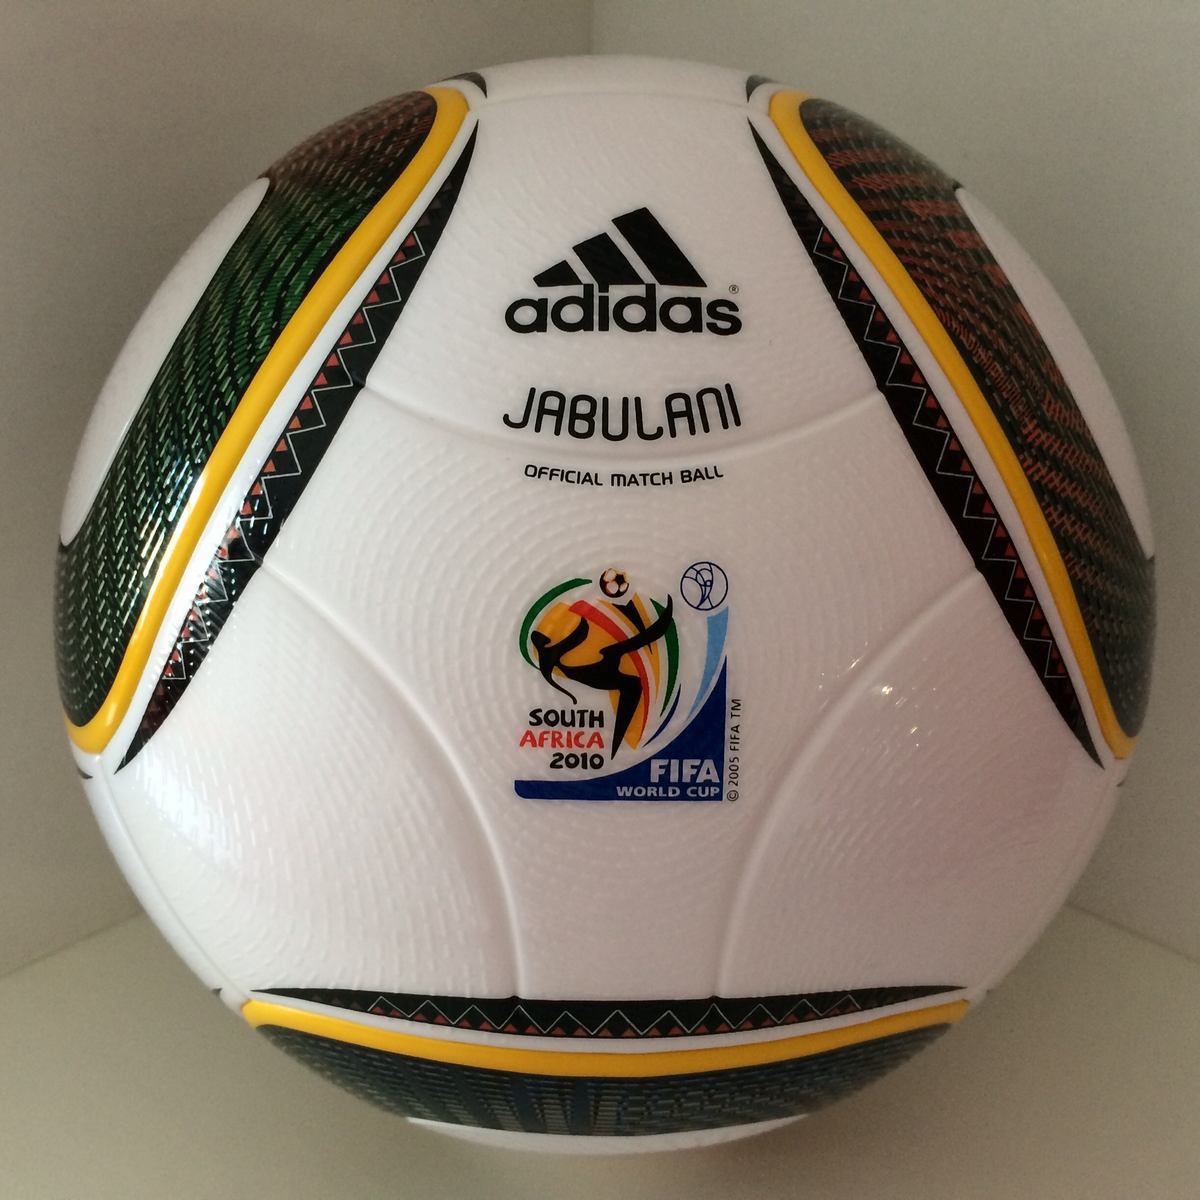 Adidas Jabulani Regular (OMB) | matchballs.eu